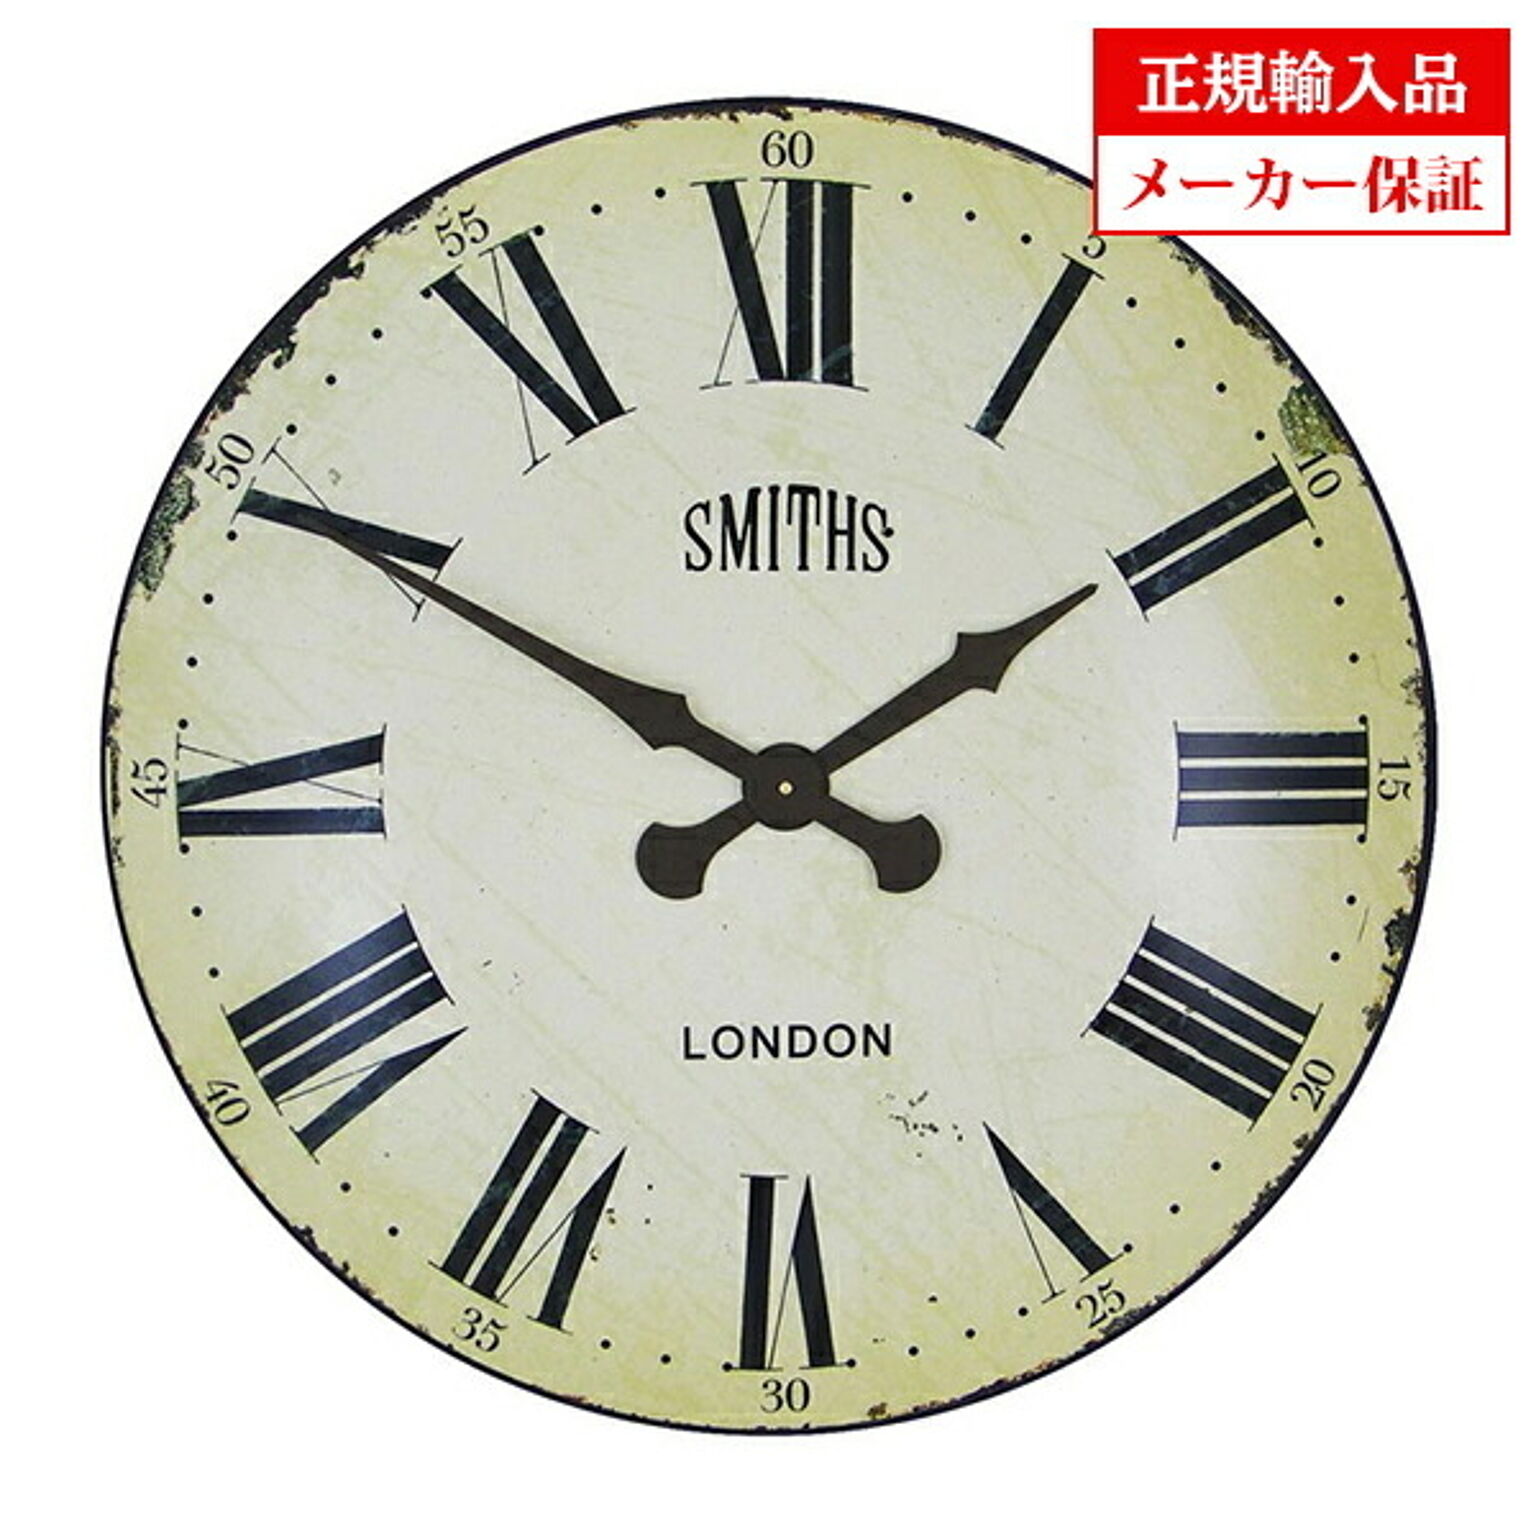 イギリス ロジャーラッセル 掛け時計 [XL/SMITHS/WHITE] ROGER LASCELLES SMiths clocks スミスデザインクロック 正規輸入品